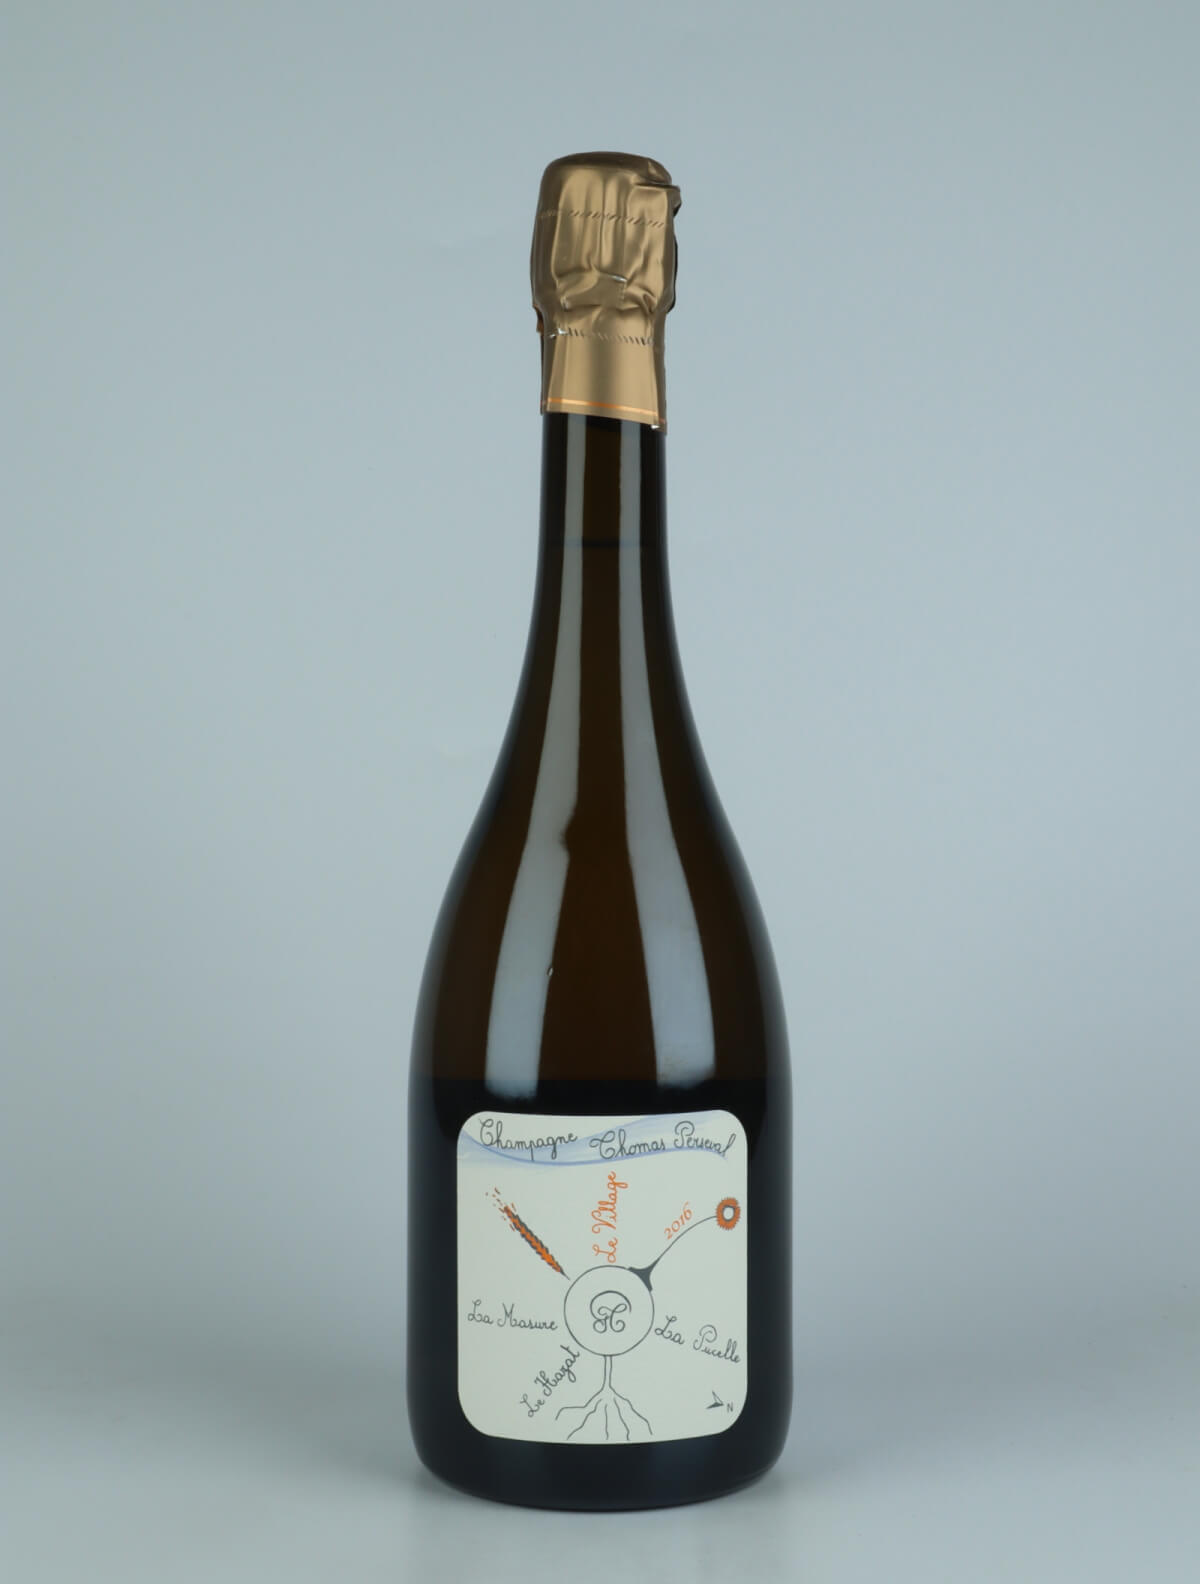 En flaske 2016 Chamery 1. Cru - Le Village Mousserende fra Thomas Perseval, Champagne i Frankrig